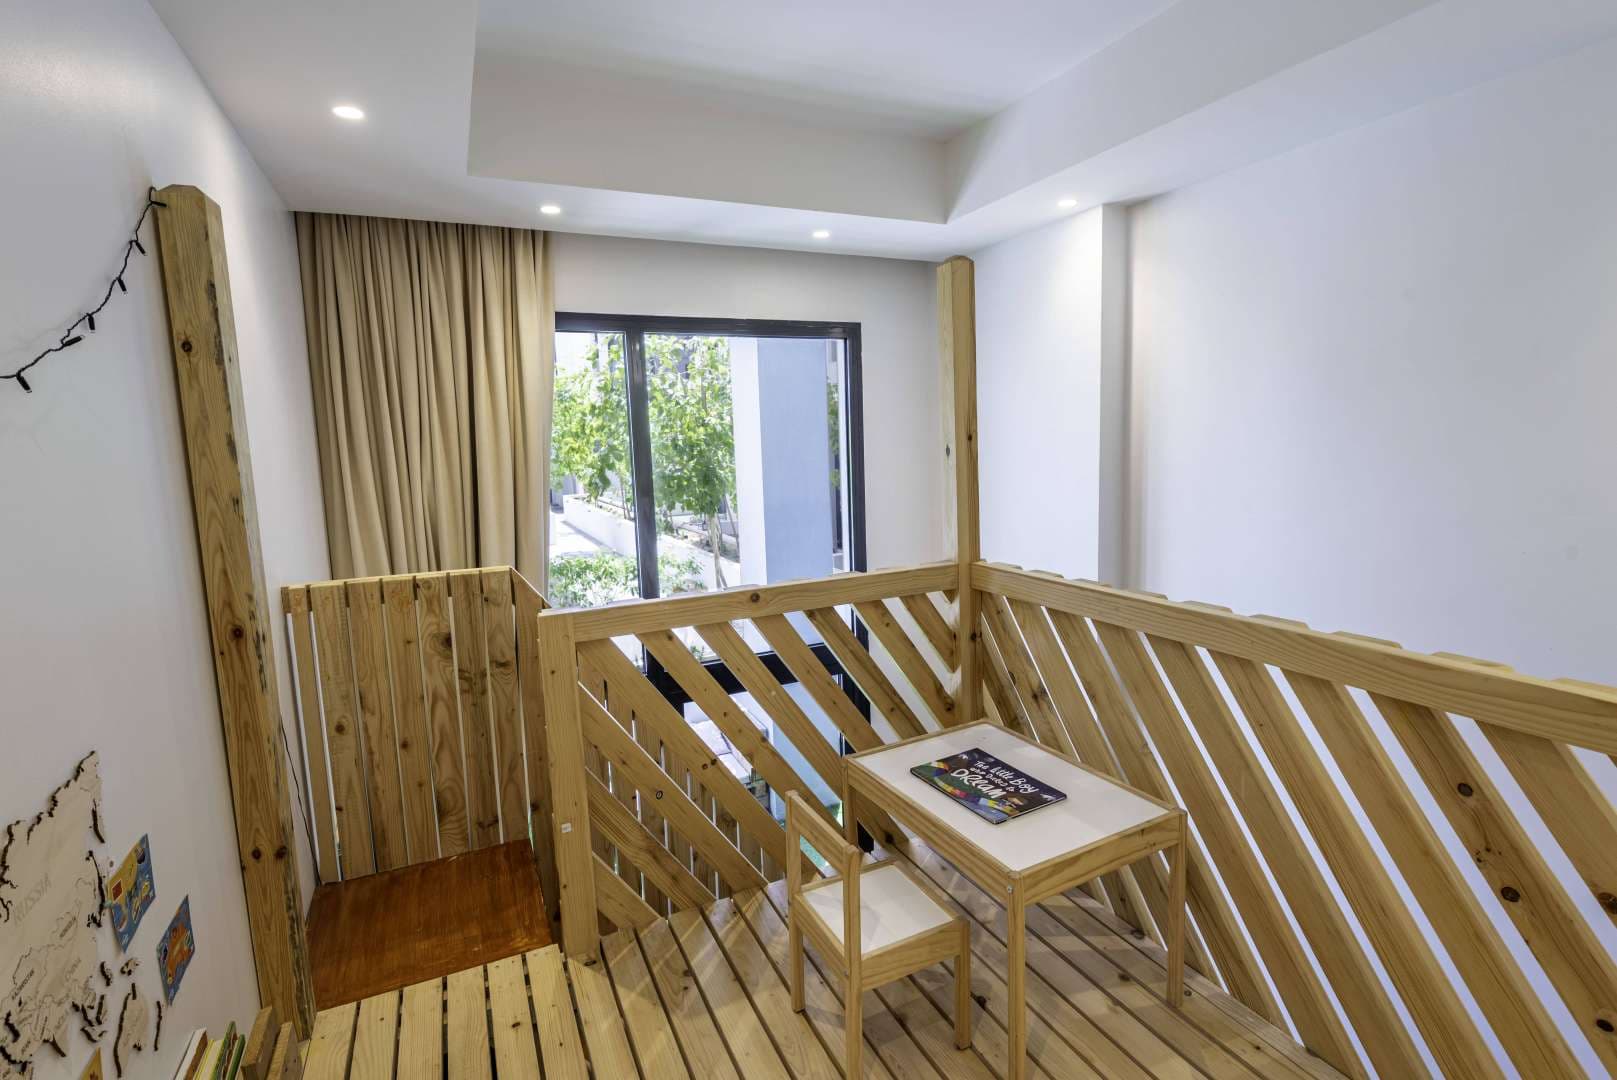 2 Bedroom Apartment For Sale Hyati Residence Lp05359 43101108f29b140.jpg